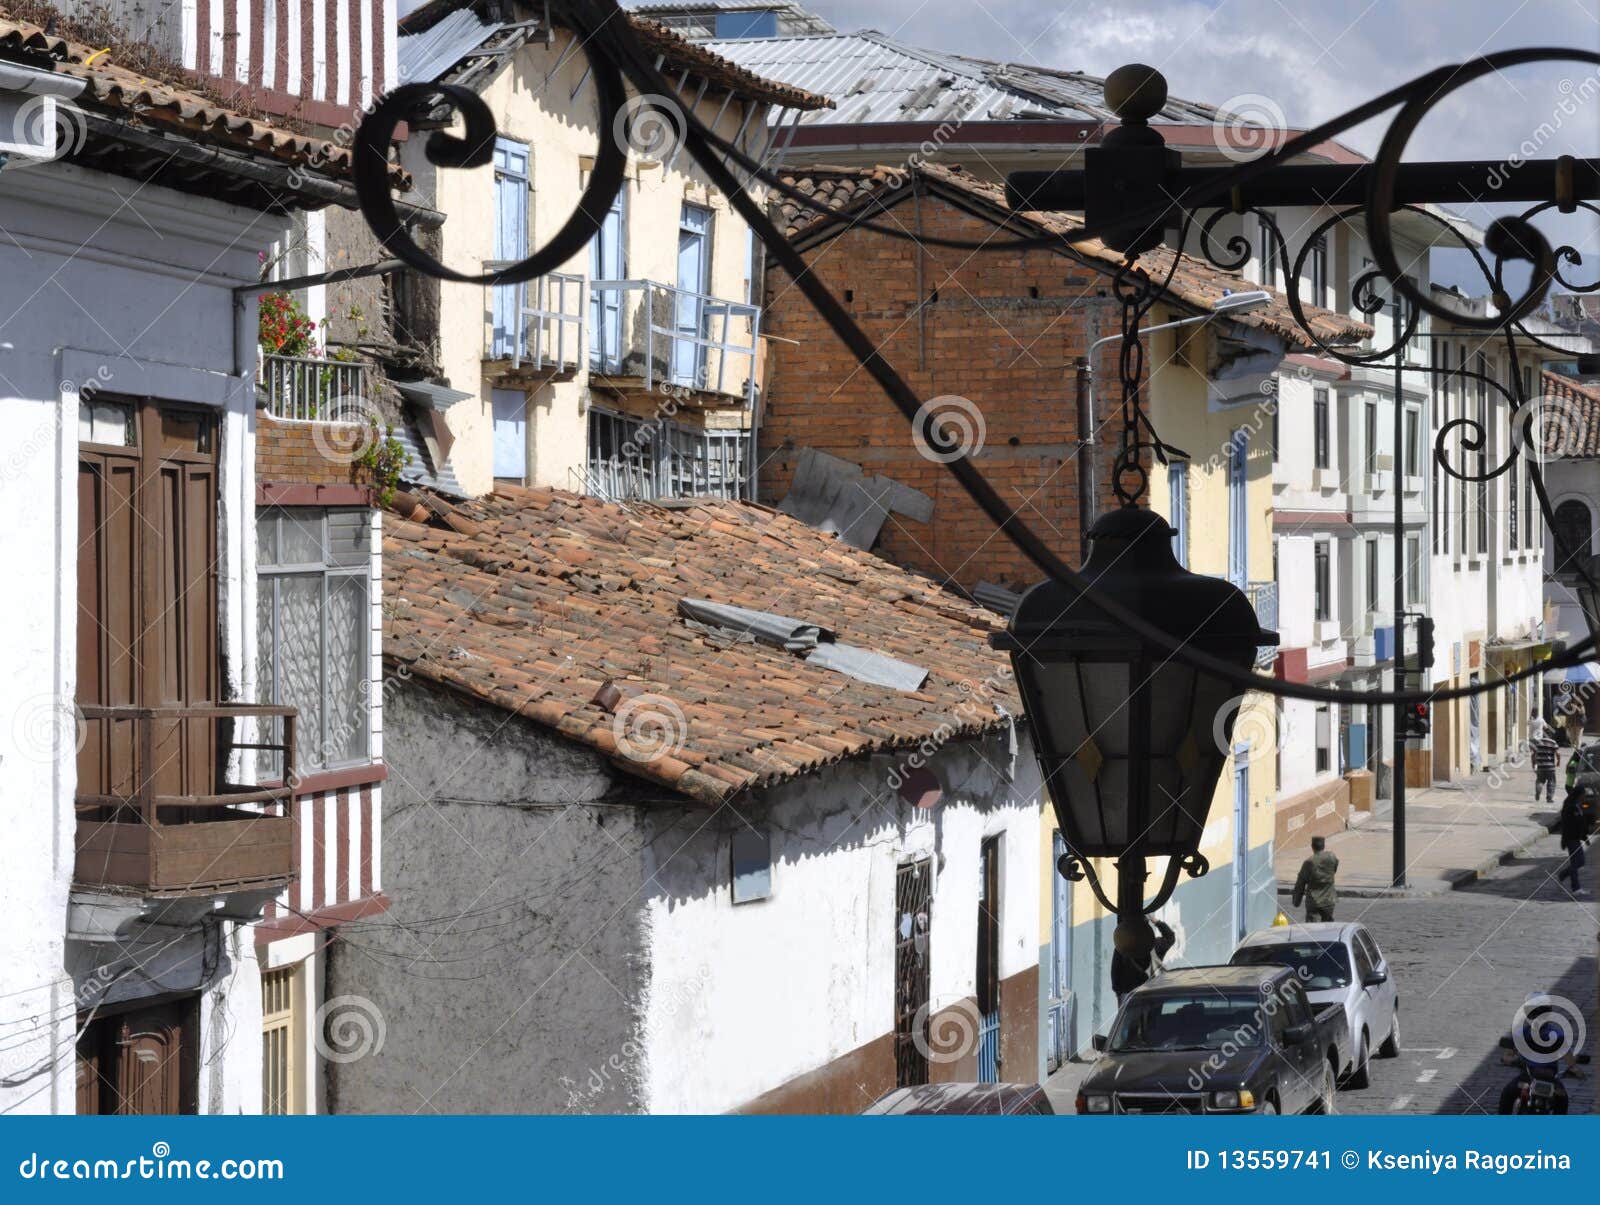 old conquistadorÃÂ´s town cuenca in ecuador